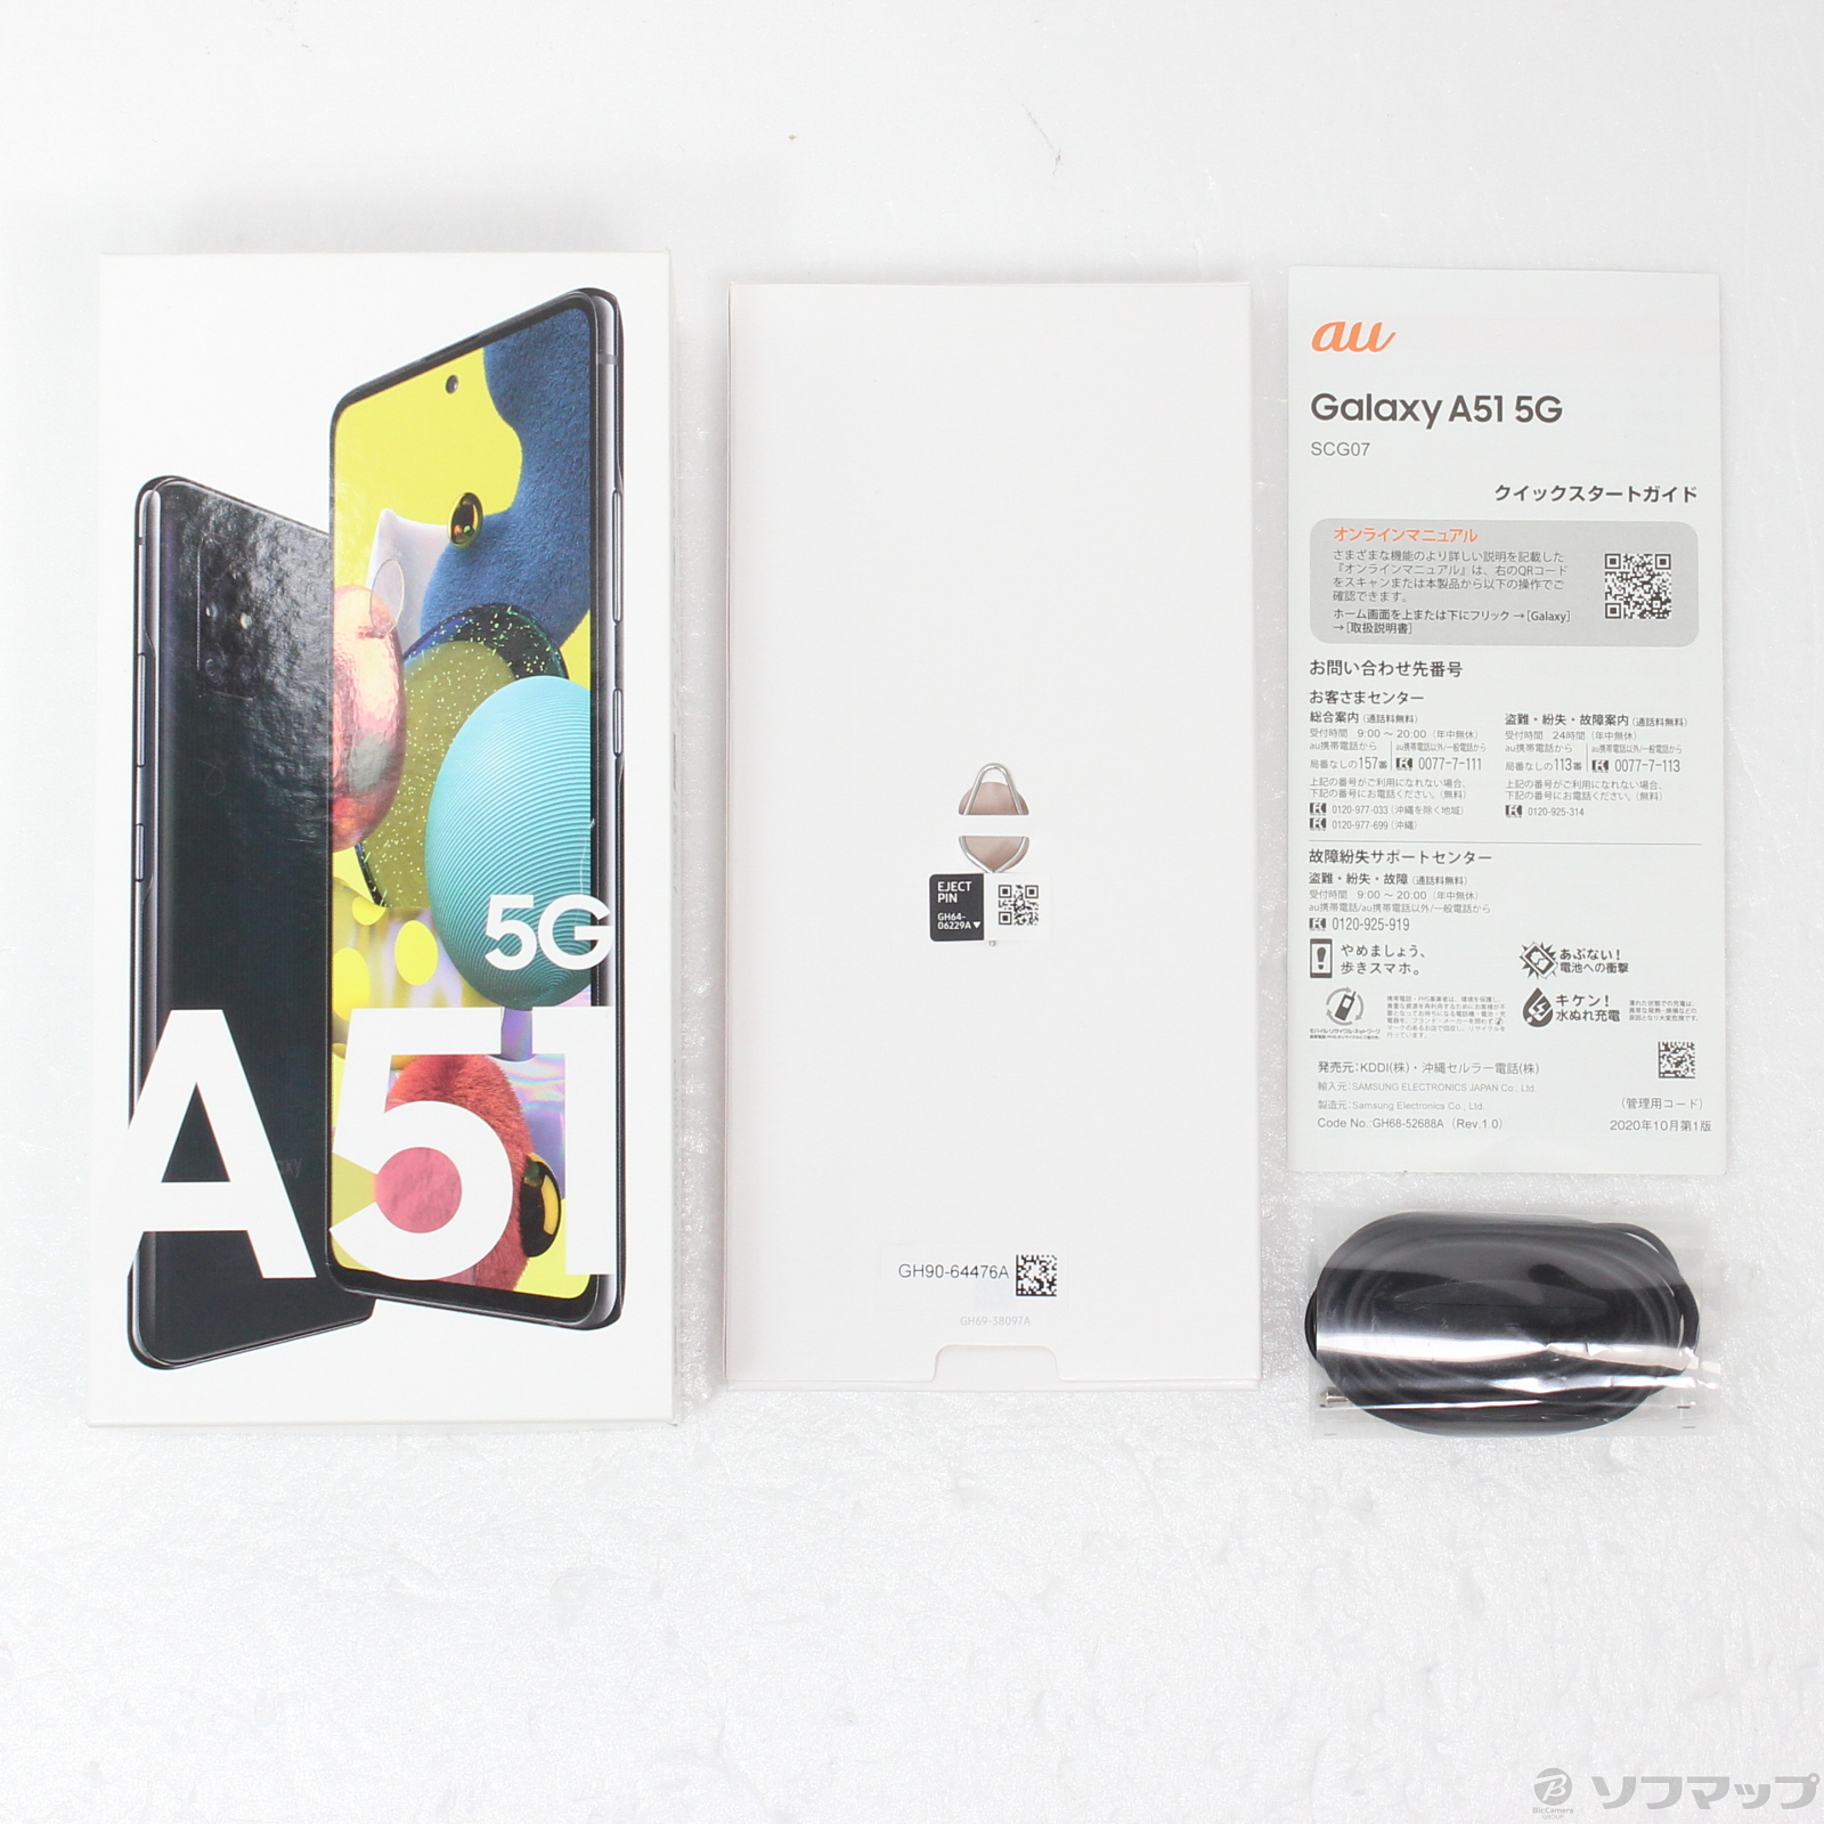 Galaxy A51 5G au版 simフリー 128 GB - スマートフォン本体